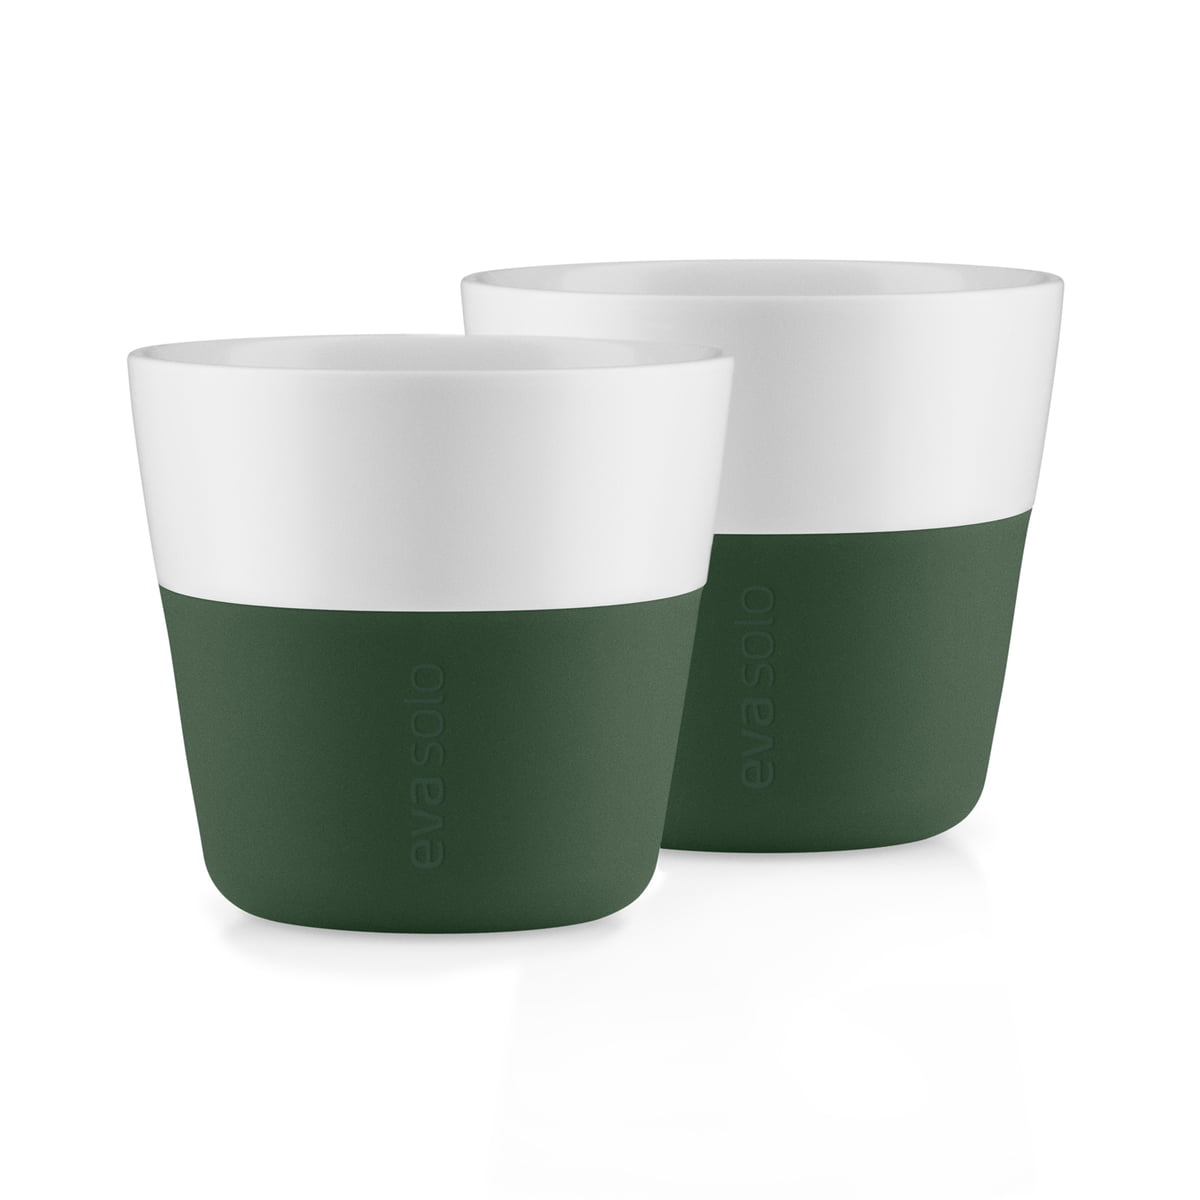 eva solo - caffé tasse à lungo (set de 2), vert émeraude